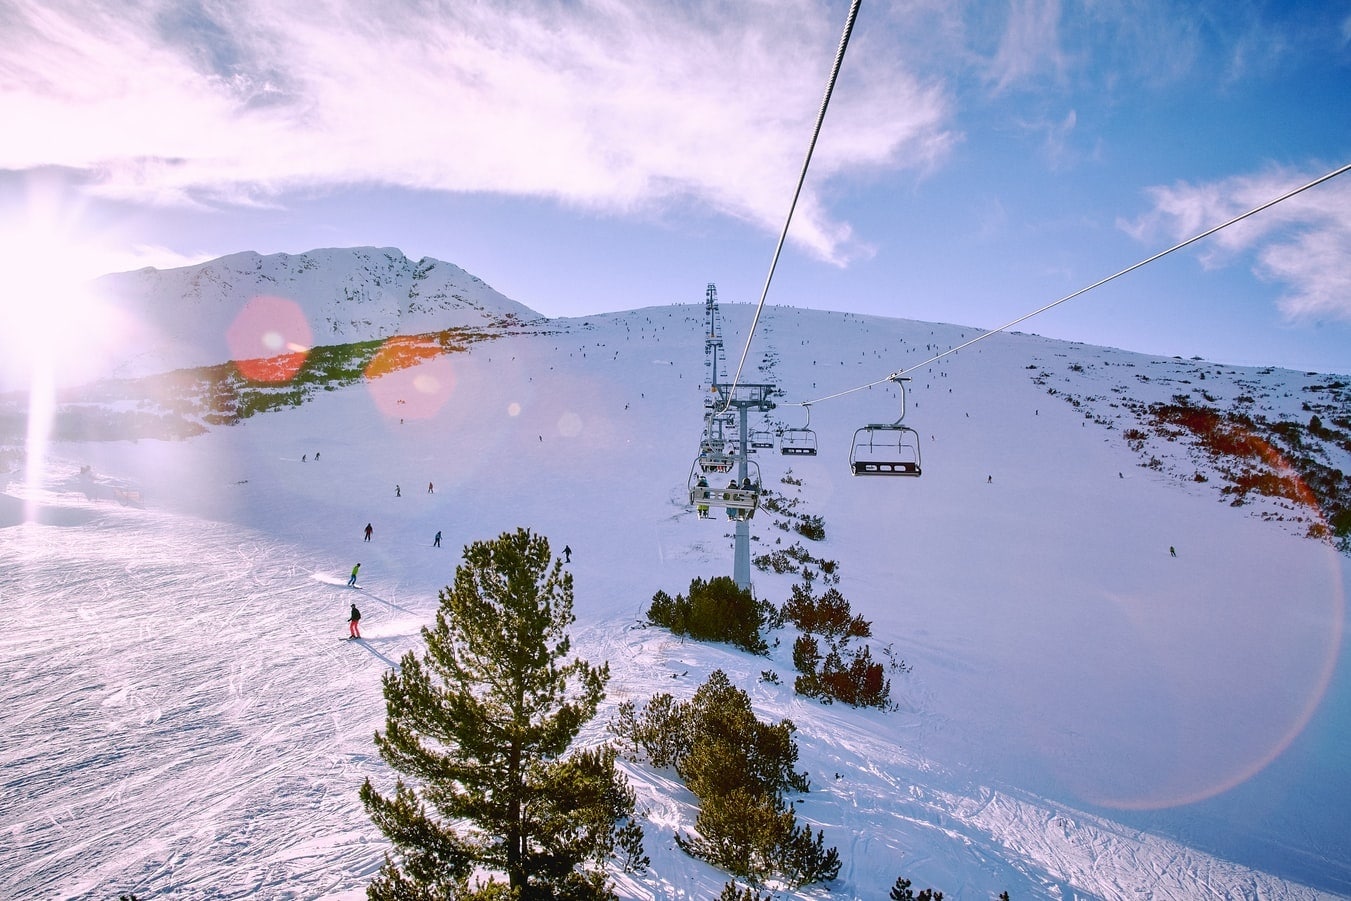 5 Tipps wie ihr am meisten aus dem skitag rausholt